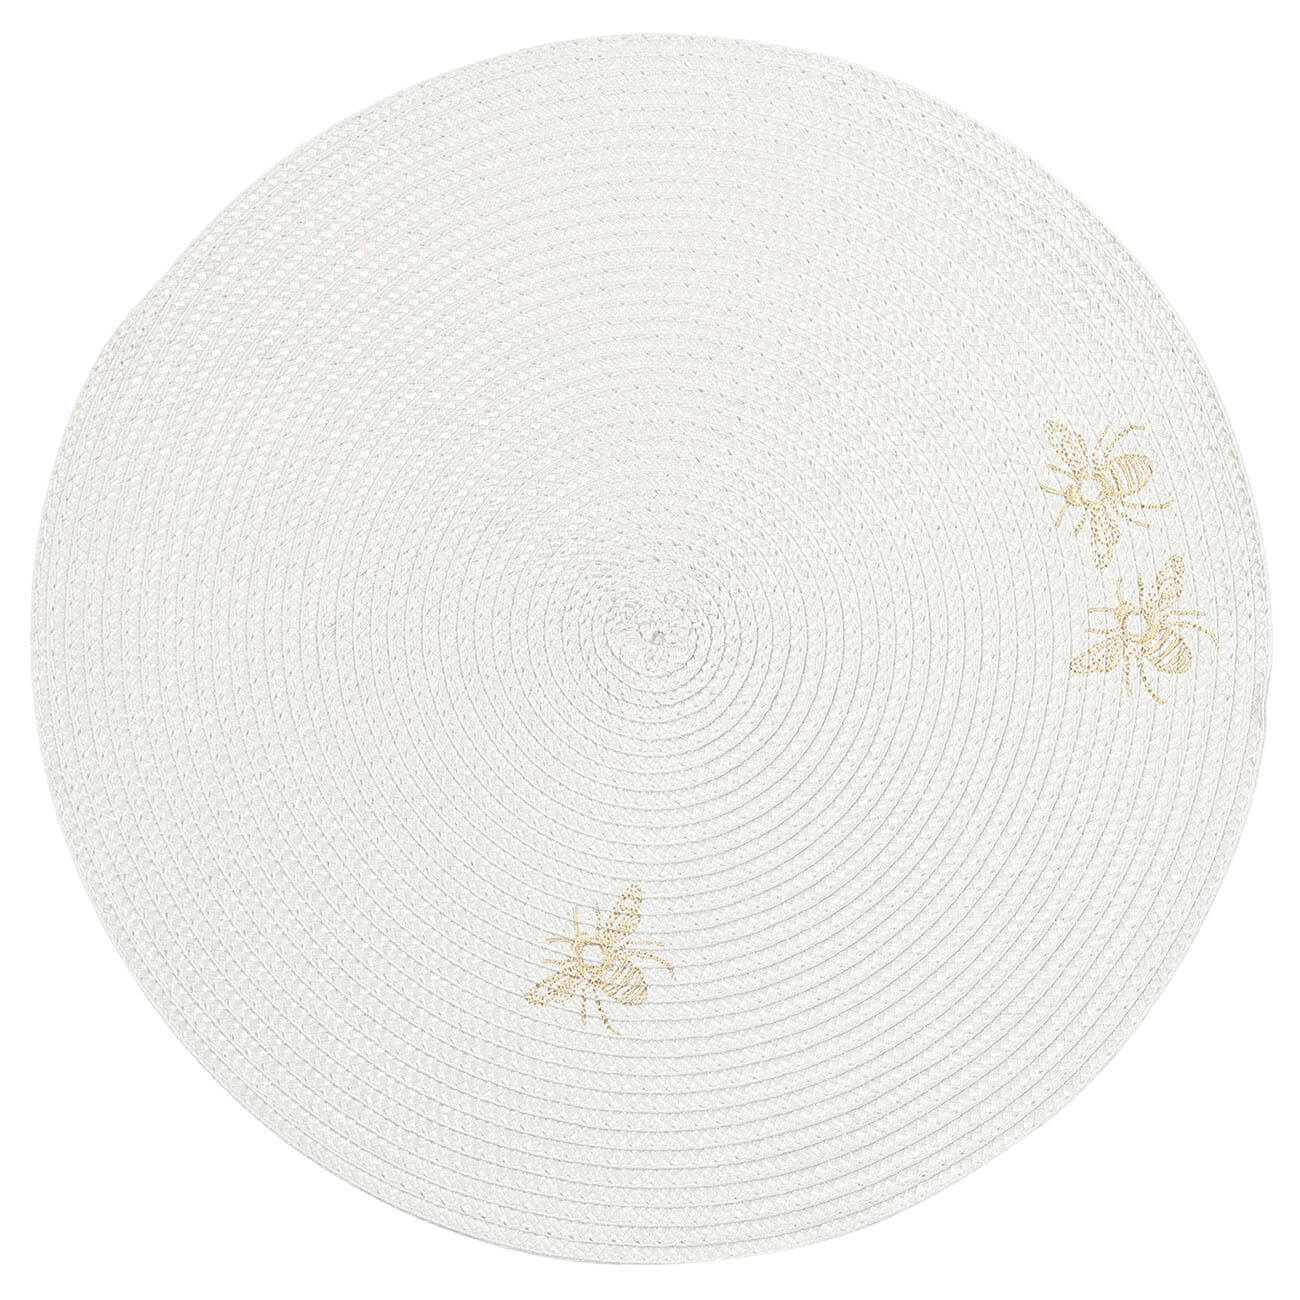 Салфетка под приборы, 38 см, полипропилен/ПЭТ, круглая, светло-серая, Пчелы, Circle embroidery протирочная салфетка dollex